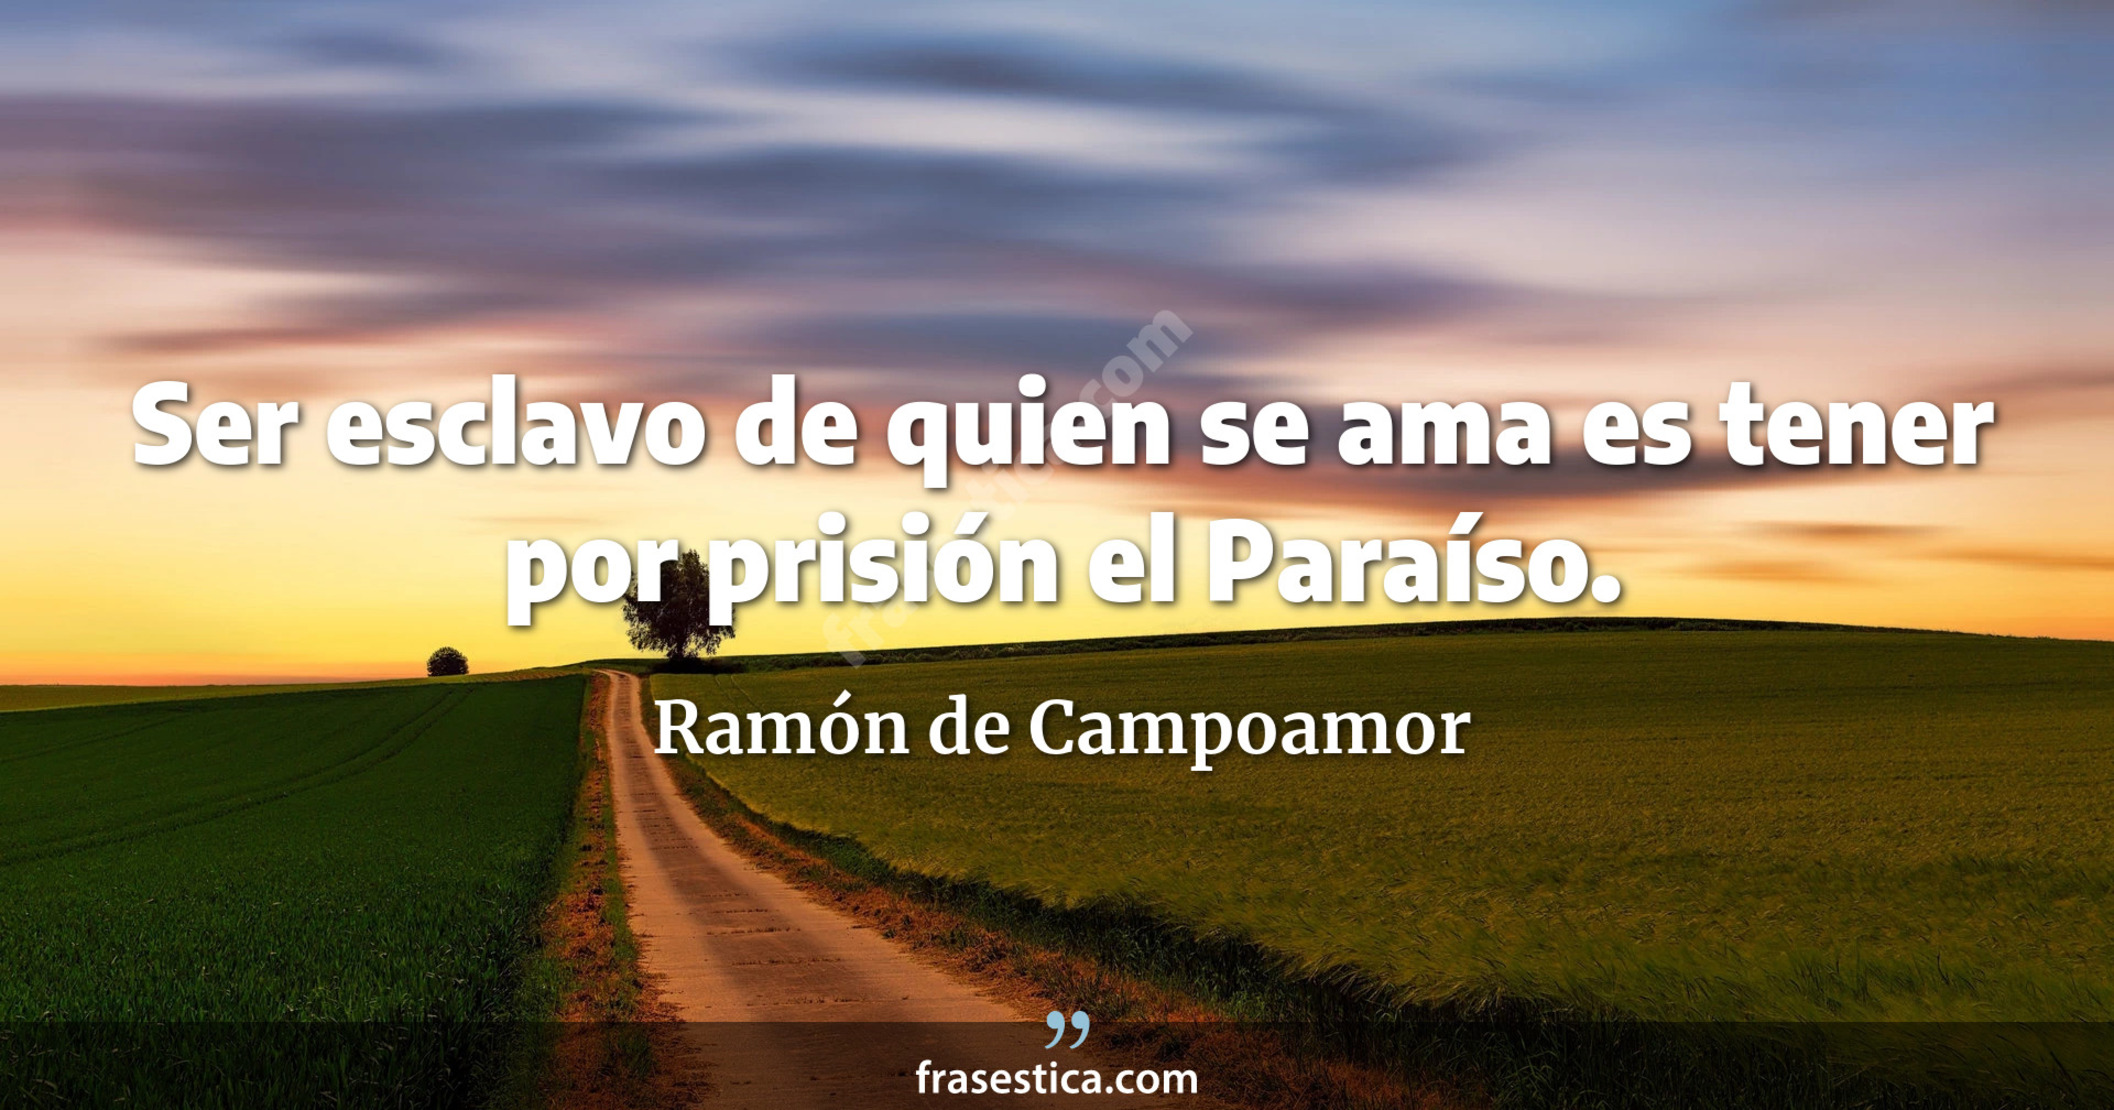 Ser esclavo de quien se ama es tener por prisión el Paraíso. - Ramón de Campoamor